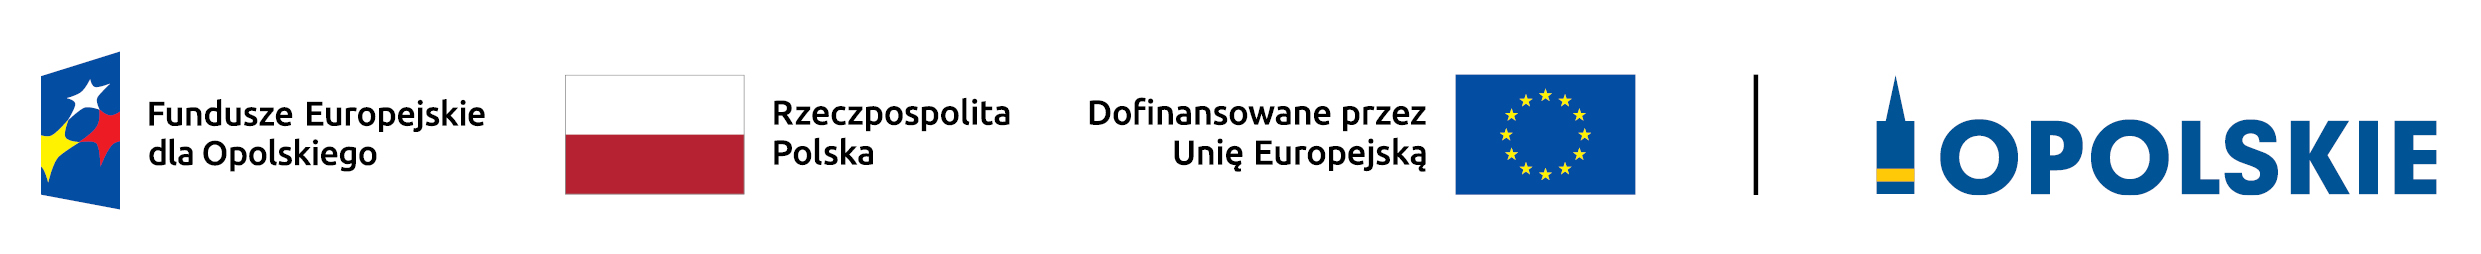 Logotypy Fundusze Europejskie dla Opolskiego, flaga RP, Dofinansowane przez Unię Europejską, Opolskie